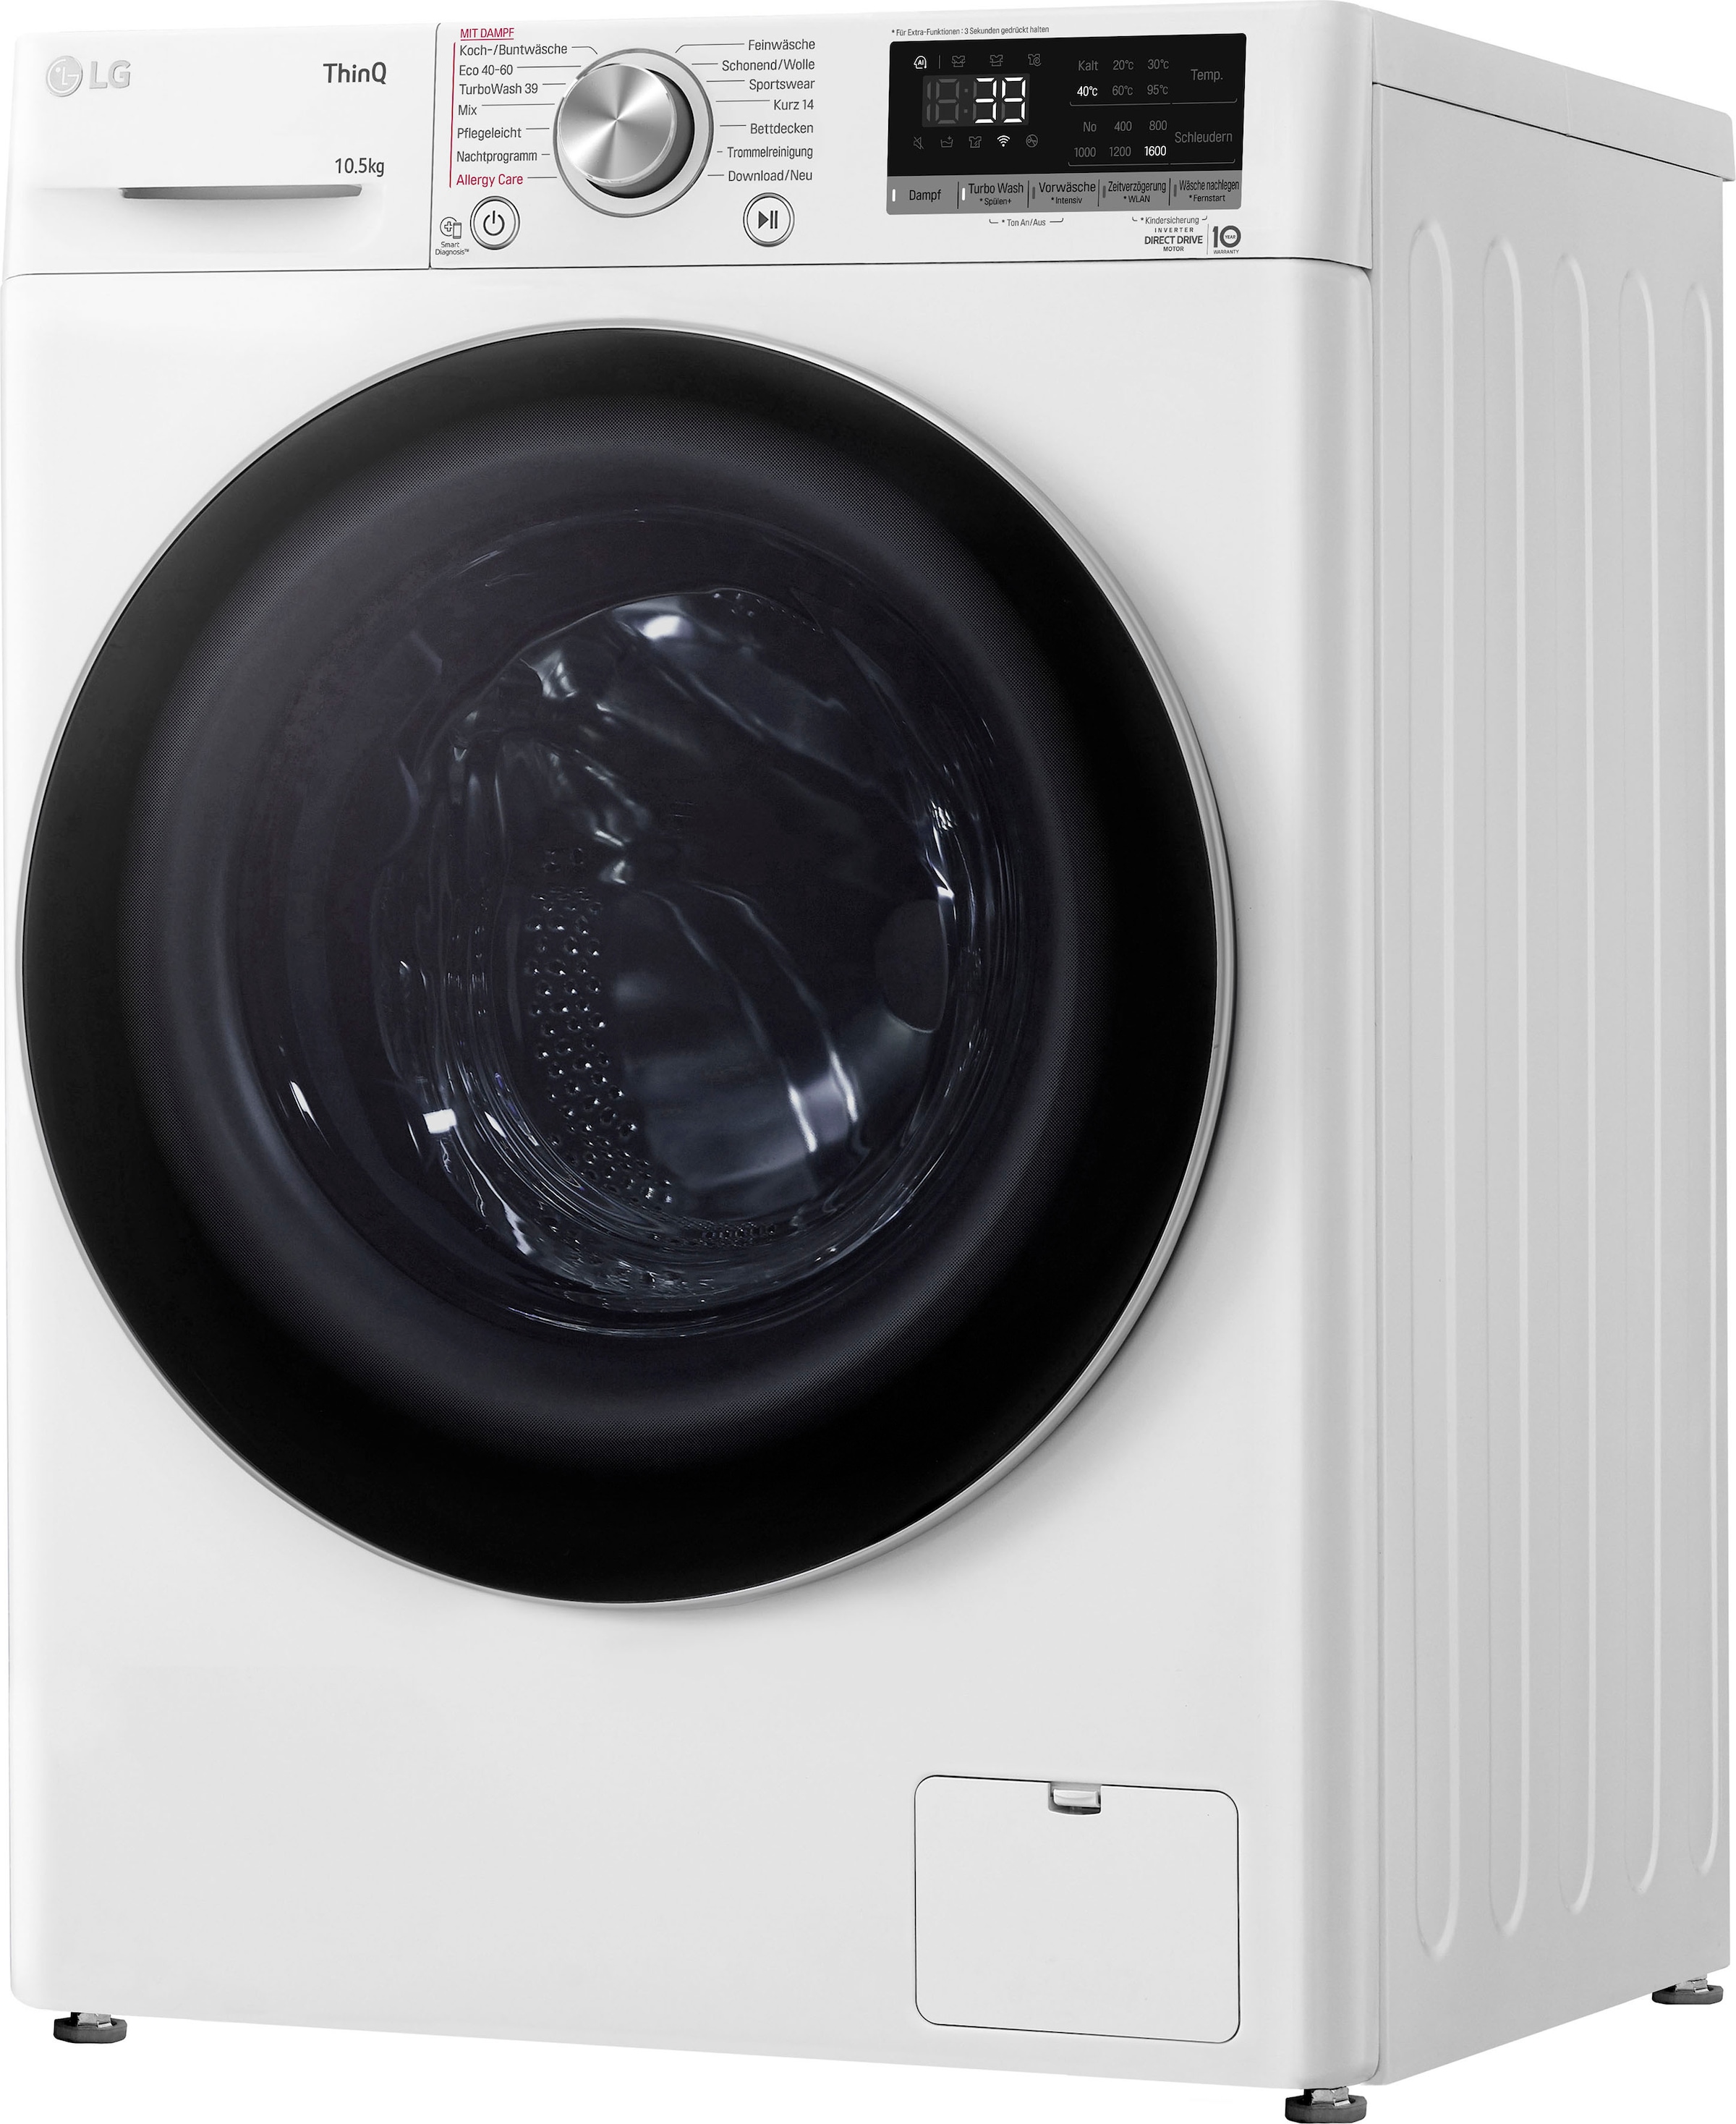 kg, 10,5 LG TurboWash® bestellen 1600 online in Waschen | 39 »F6WV710P1«, Waschmaschine F6WV710P1, BAUR - U/min, Minuten nur